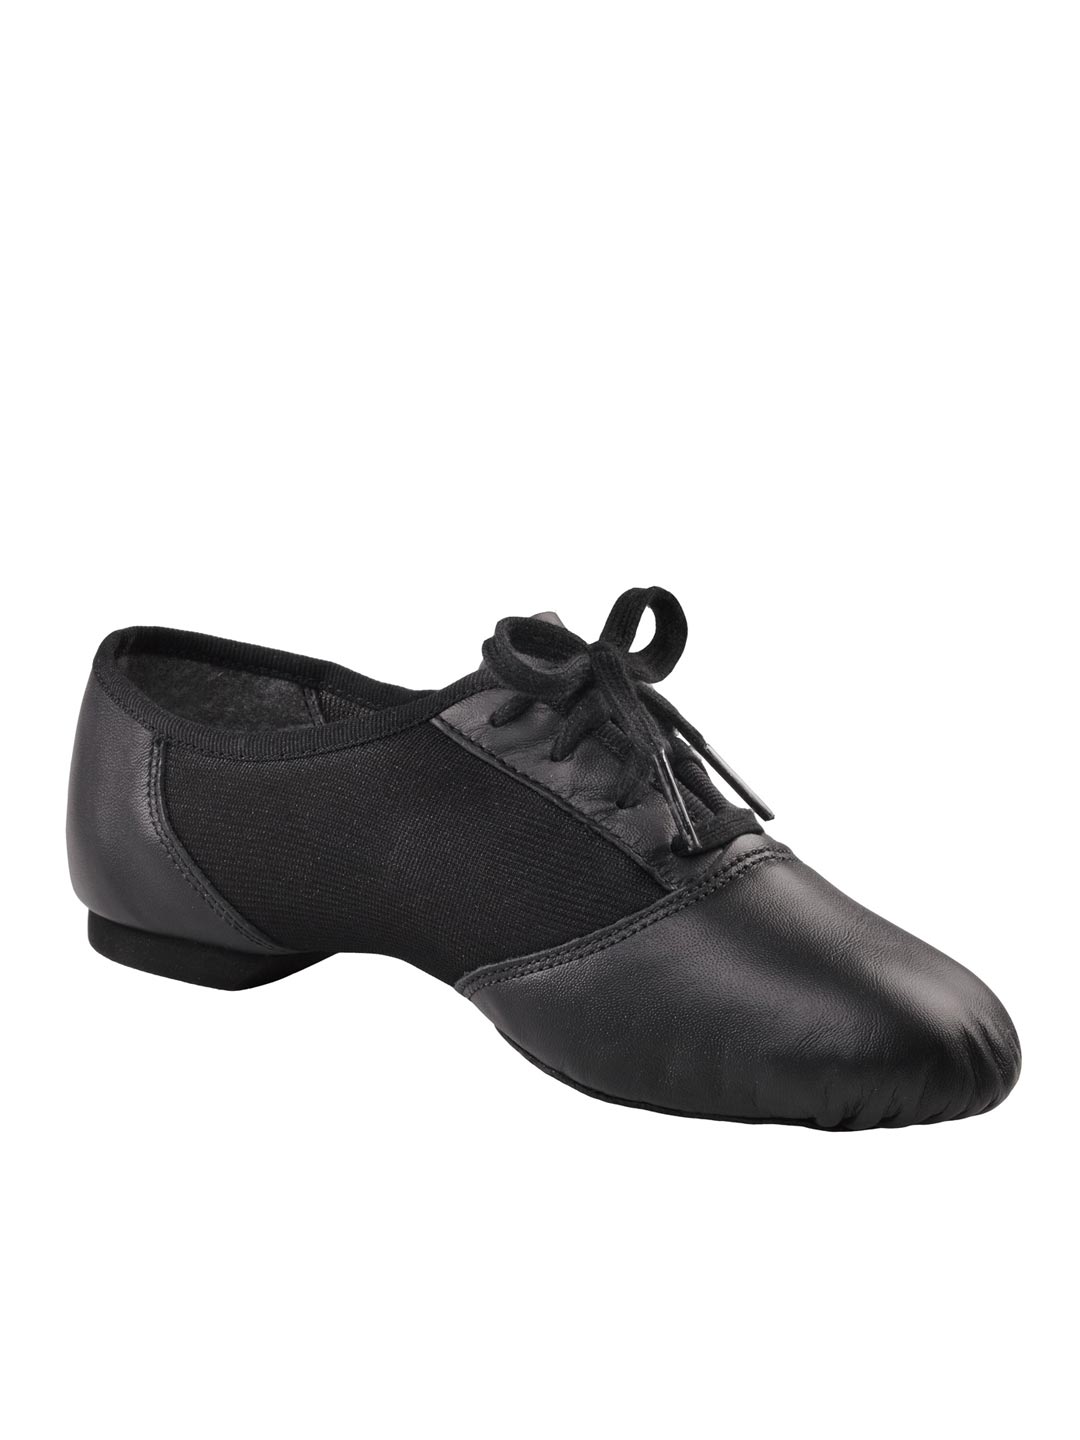 White Leather Split-Sole Ballet Shoe Capezio CG2002 Women's 5M Schoenen damesschoenen Instappers Balletschoenen Fits Size 4 